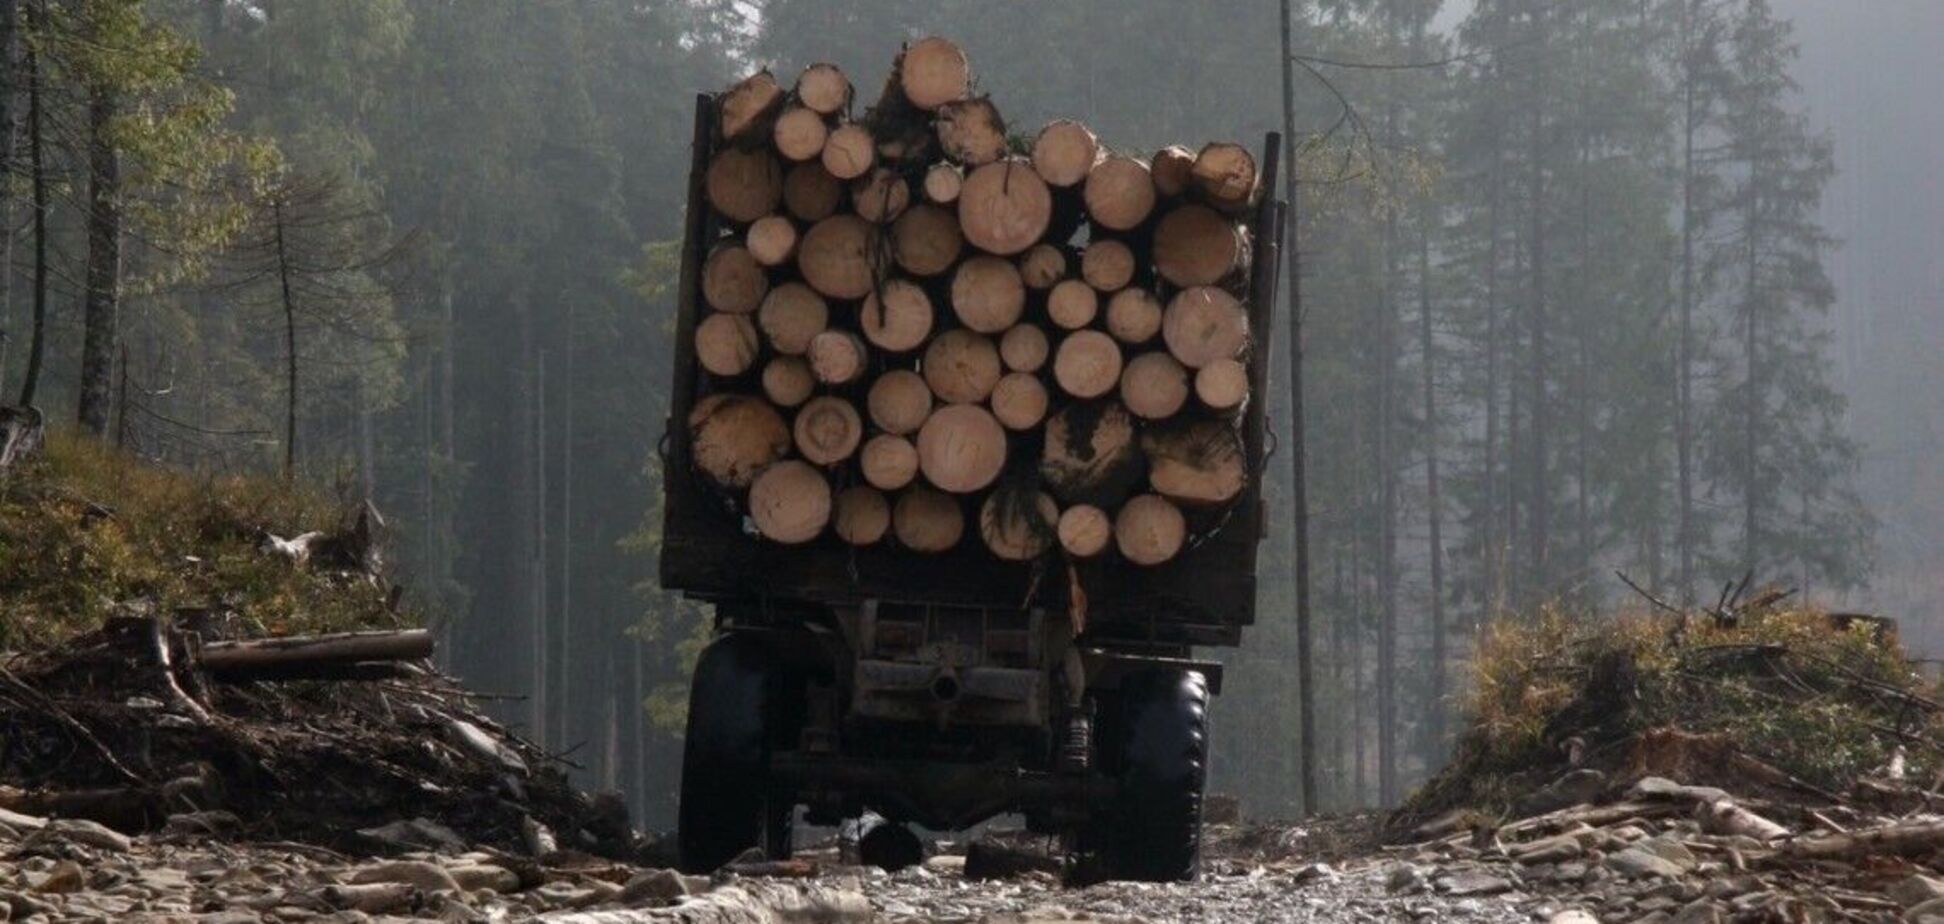 Вырубка леса влечет за собой ряд катастрофических последствий для страны